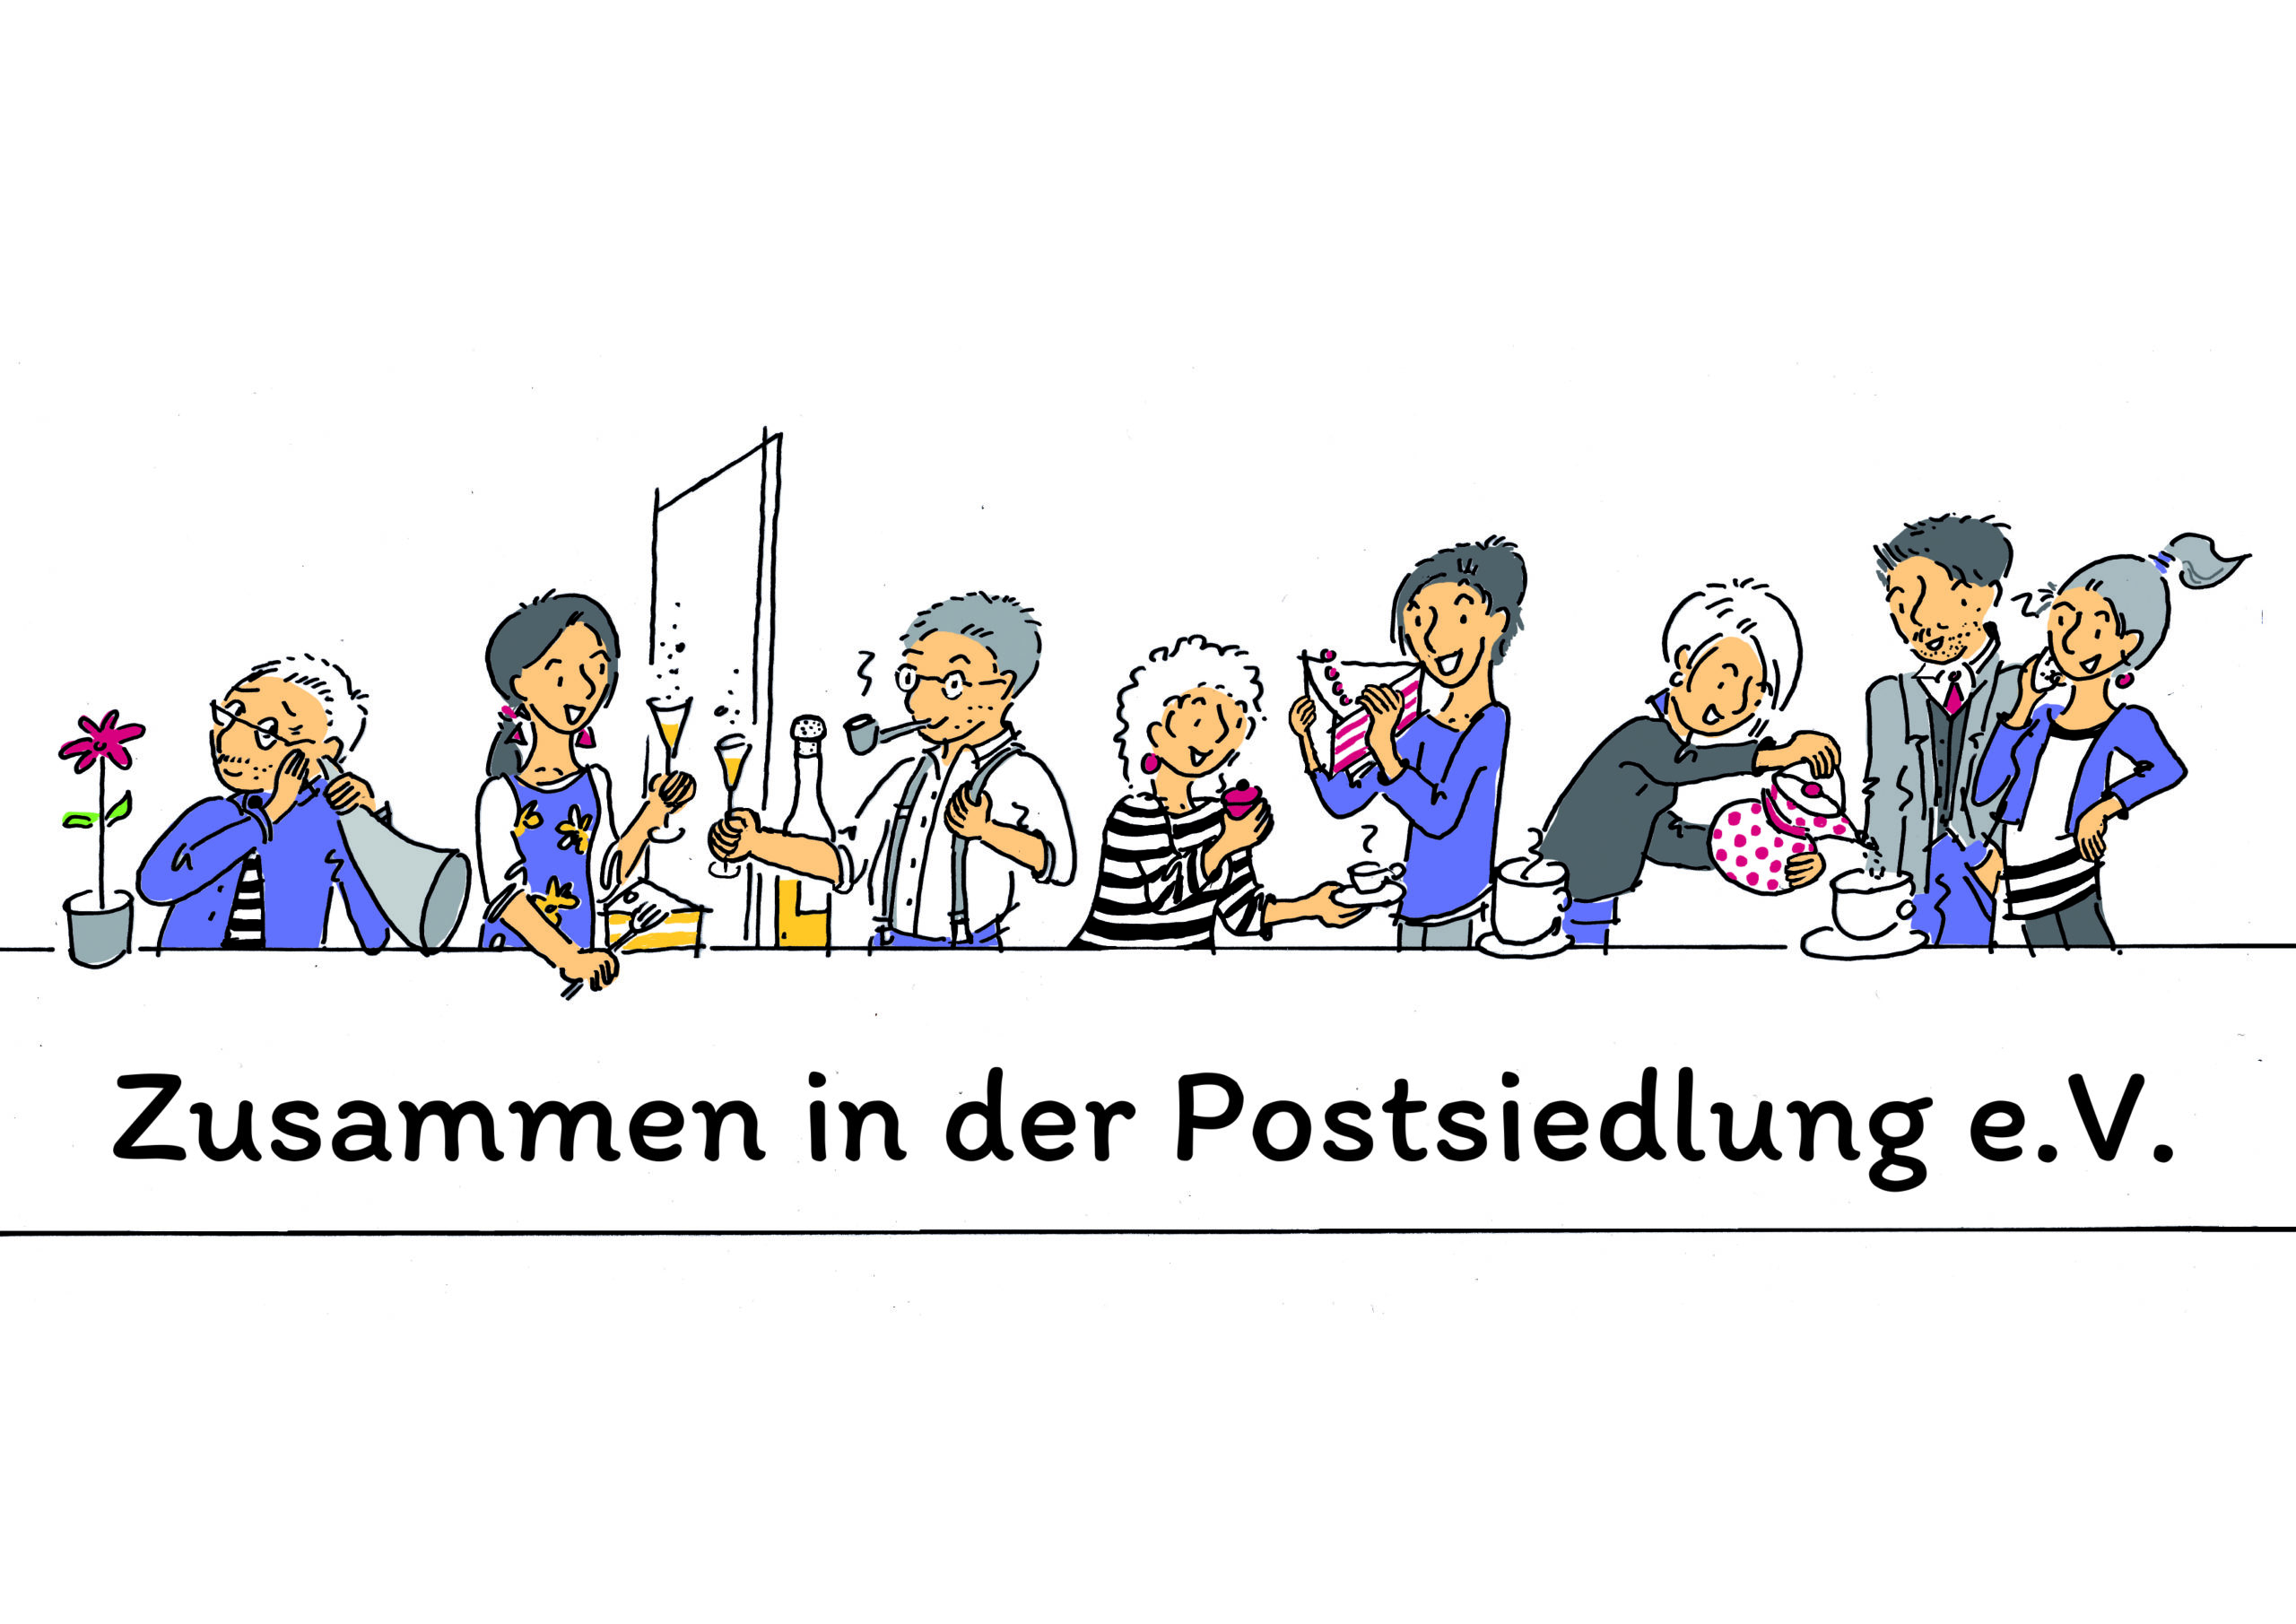 You are currently viewing Quartier: Zusammen in der Postsiedlung e.V. startet massenhafte Flyer-Infokampagne gegen völkische Hetze der AfD!